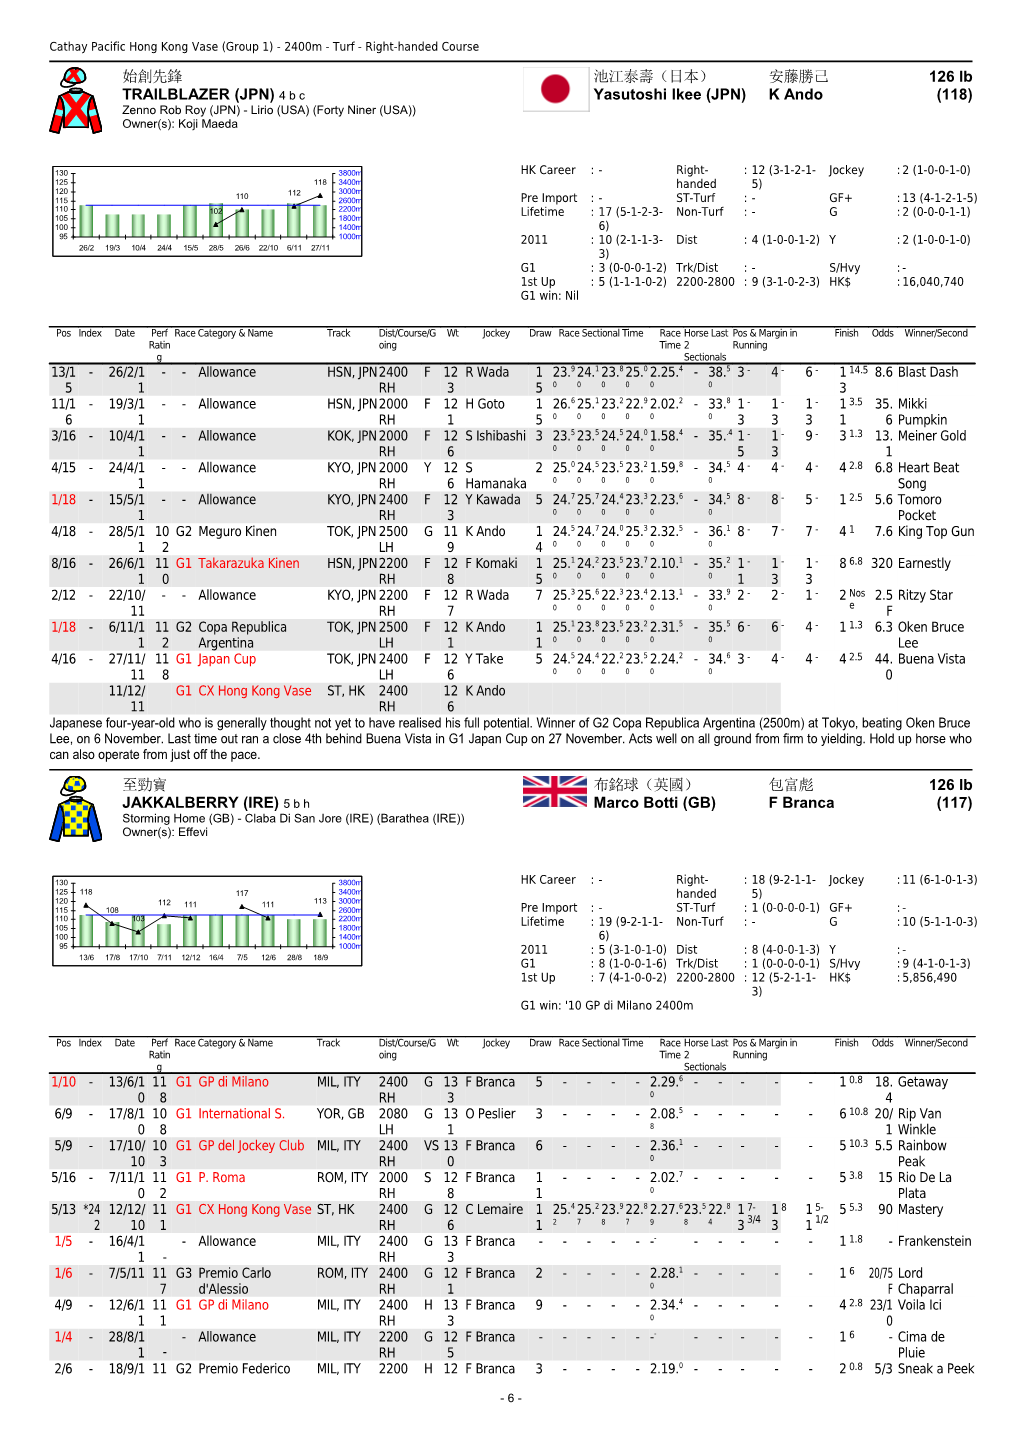 2011 Cathay Pacific Hong Kong International Races-Form Guide (Update) - the Hong Kong Jockey